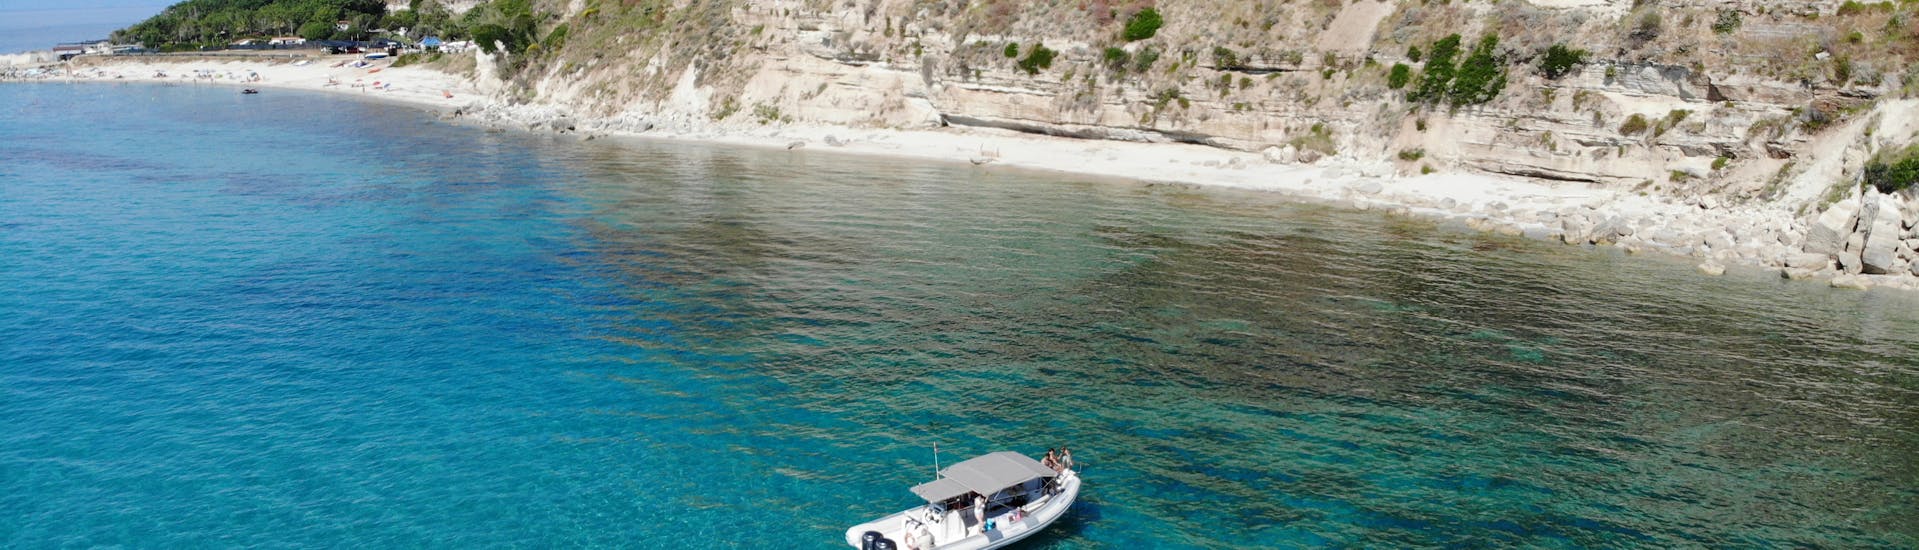 Barco de TropeaSub visto desde arriba durante el viaje en barco privado RIB de Tropea a Capo Vaticano con snorkel.